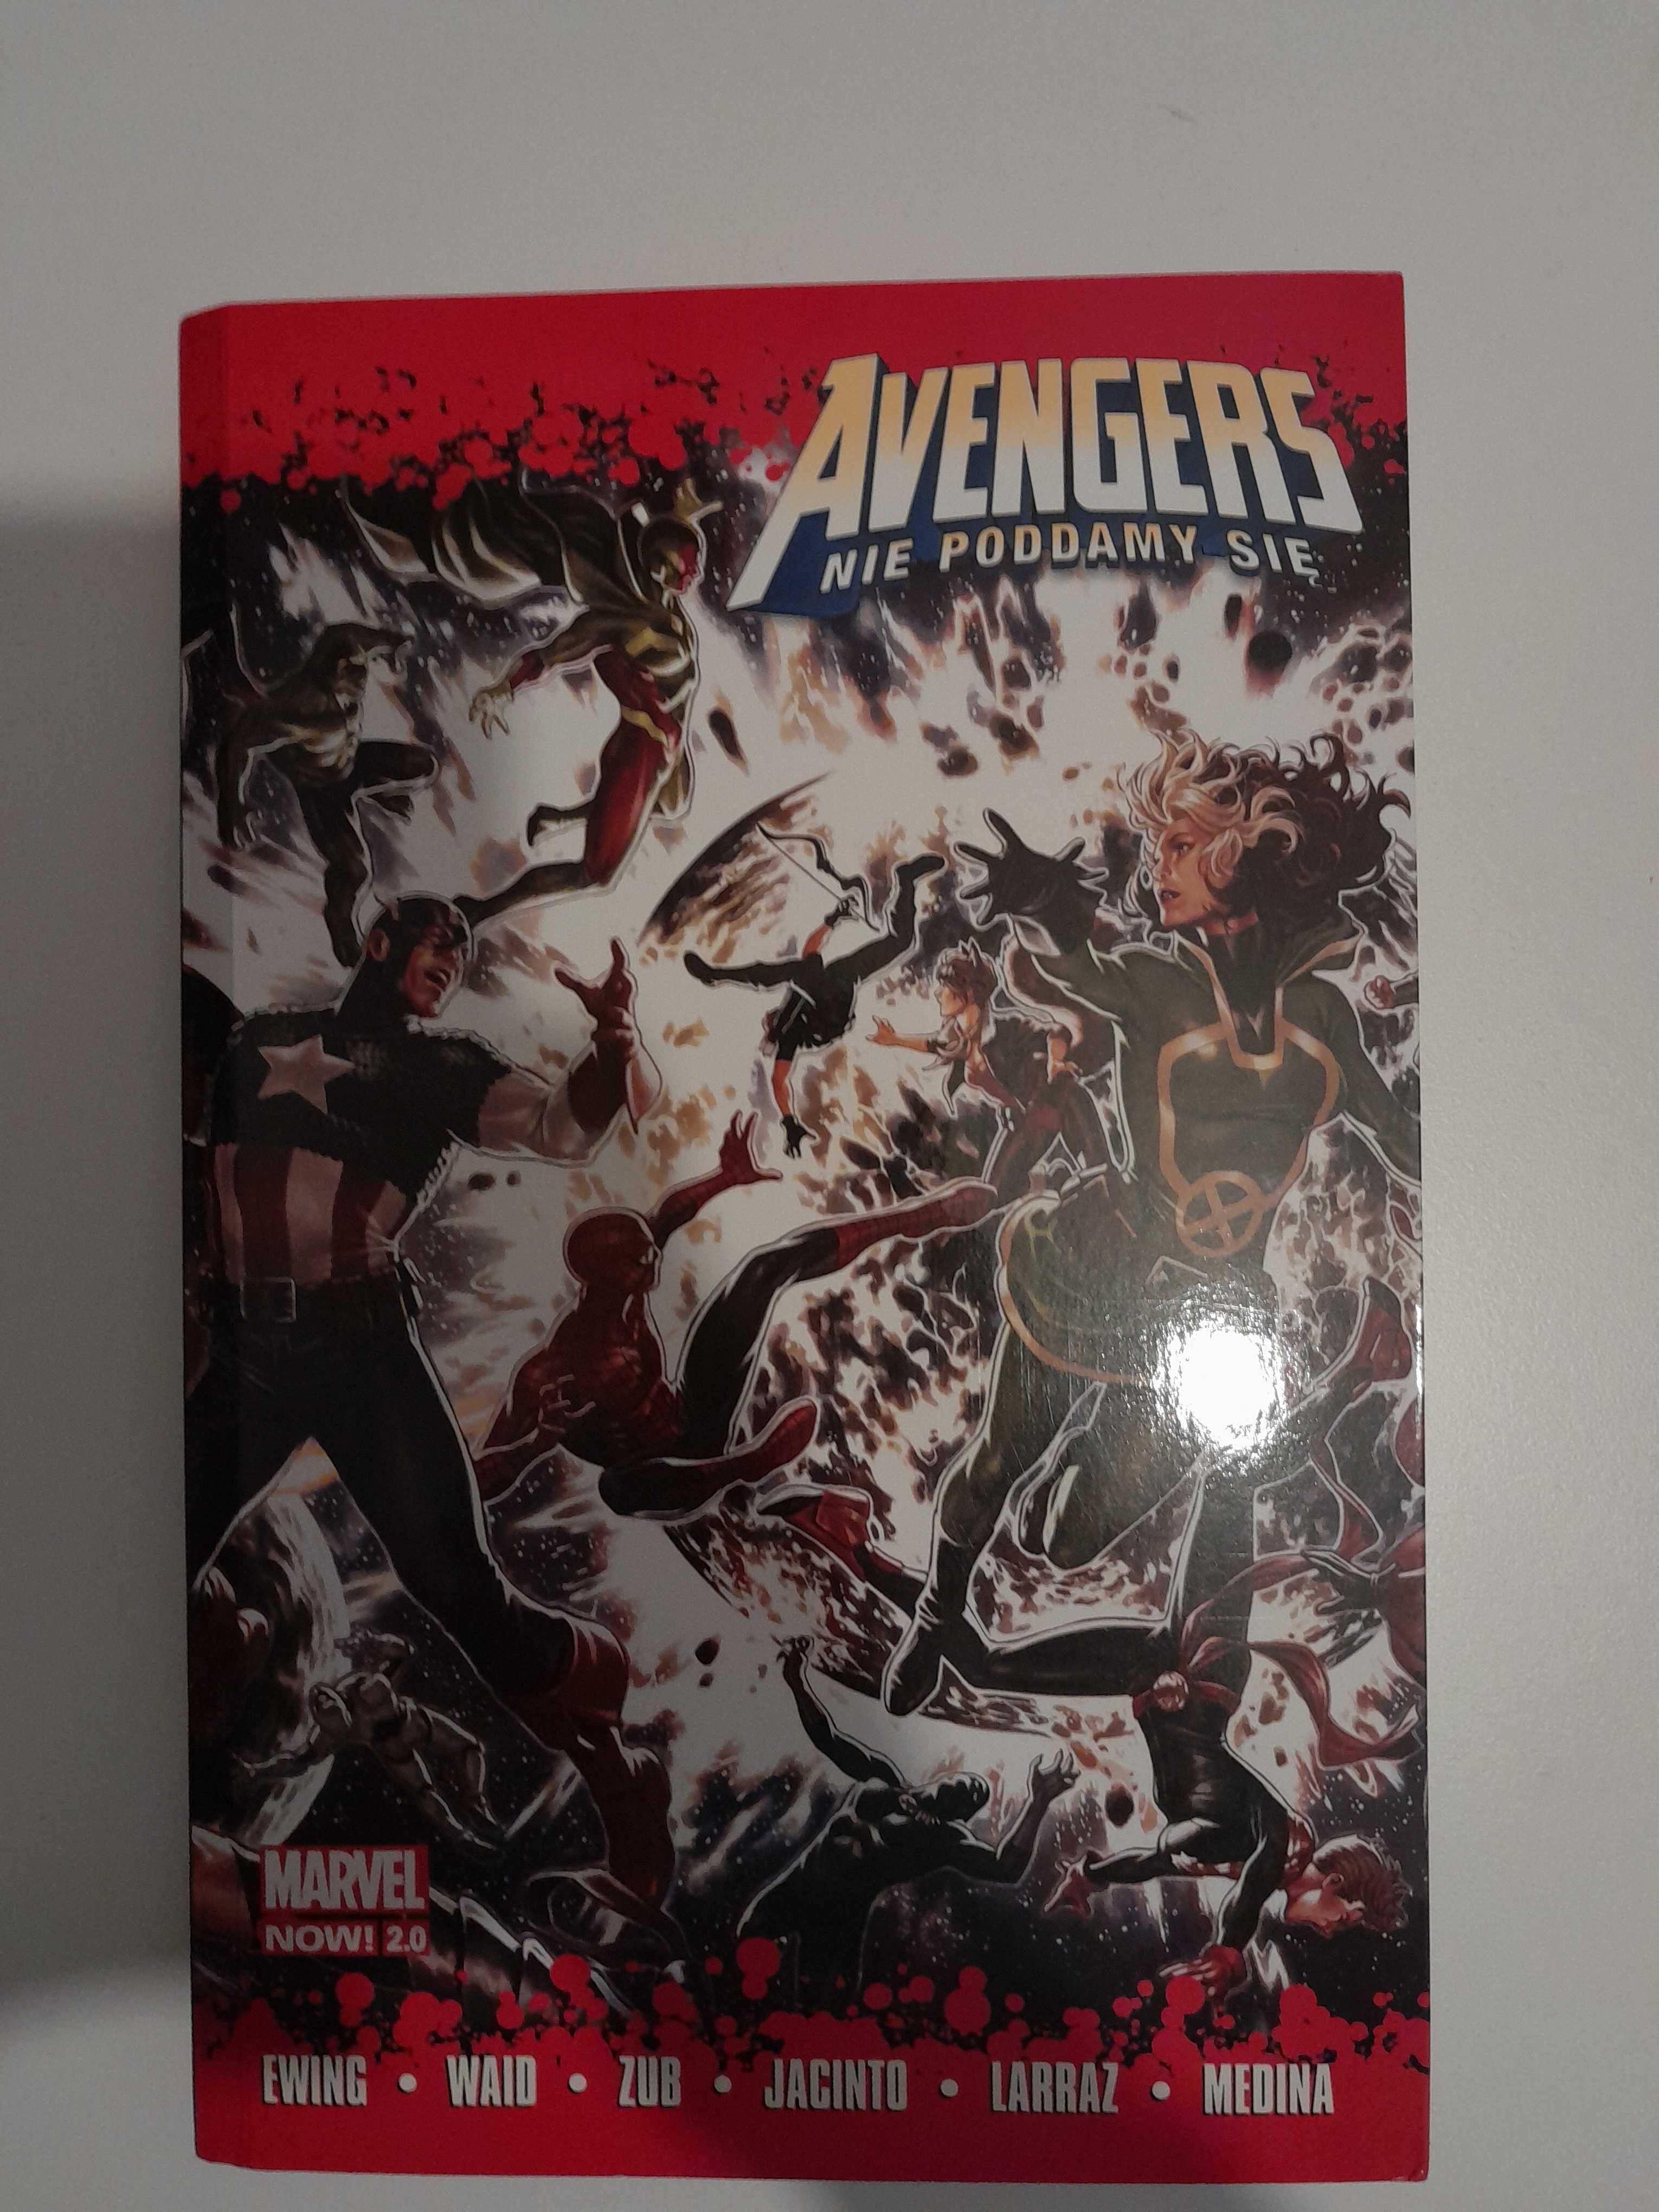 Komiks Avengers "Nie poddamy się" w mega cenie